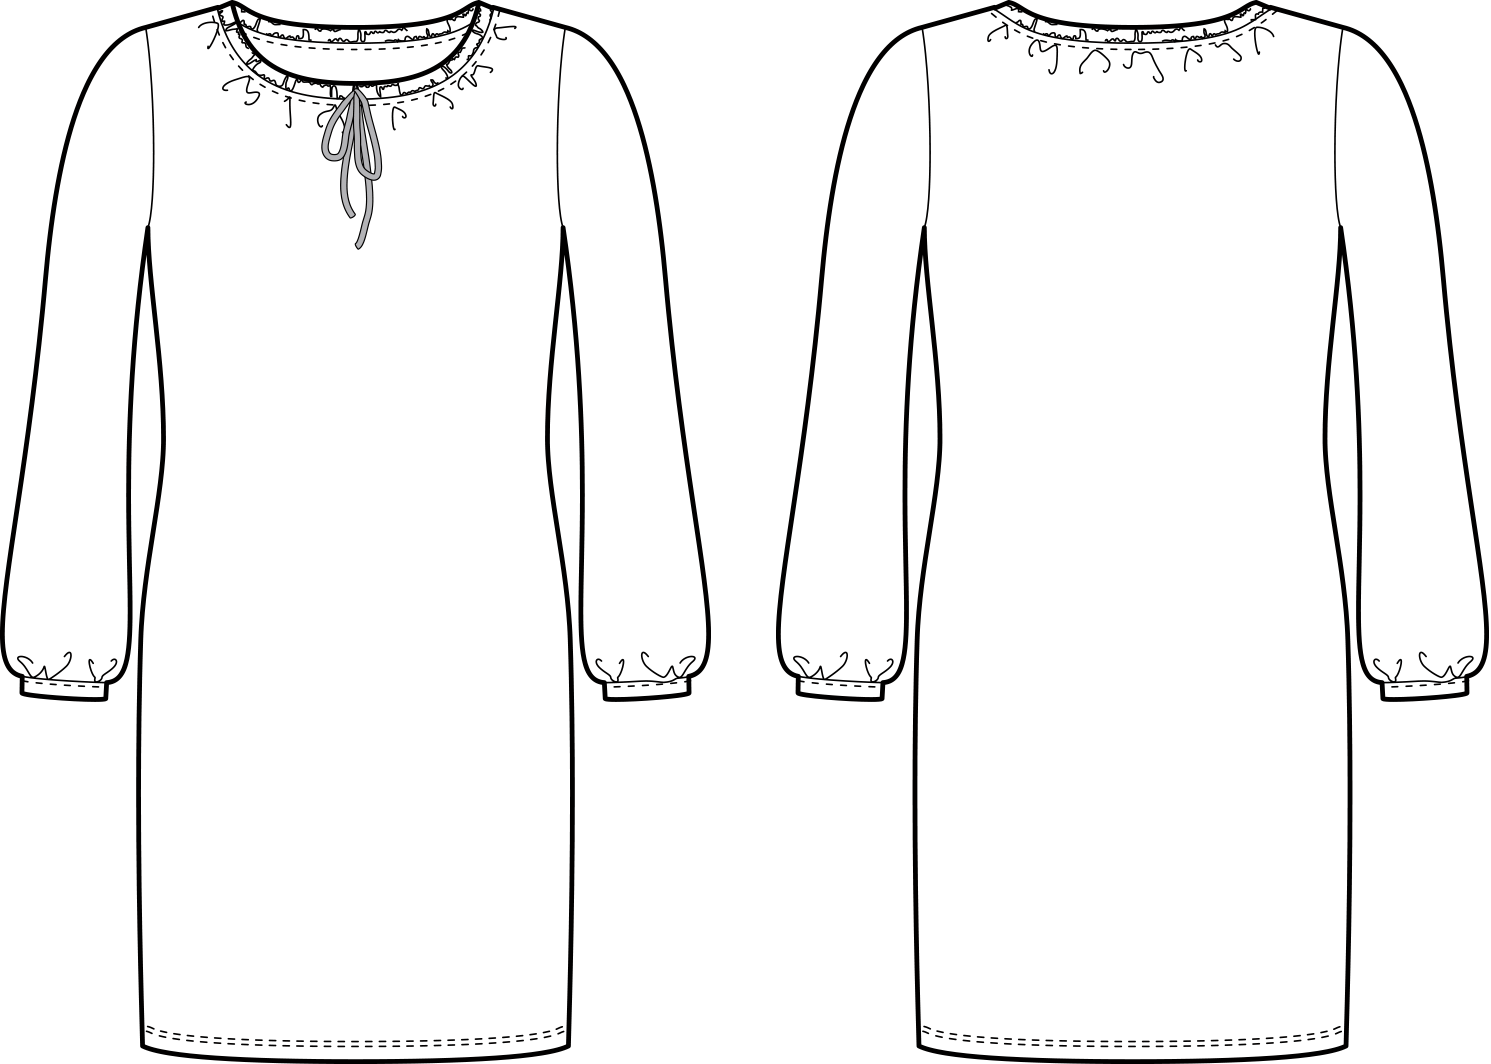 Vorder- und Rückansicht der technische Zeichnung eines Kleides ohne Abnäher